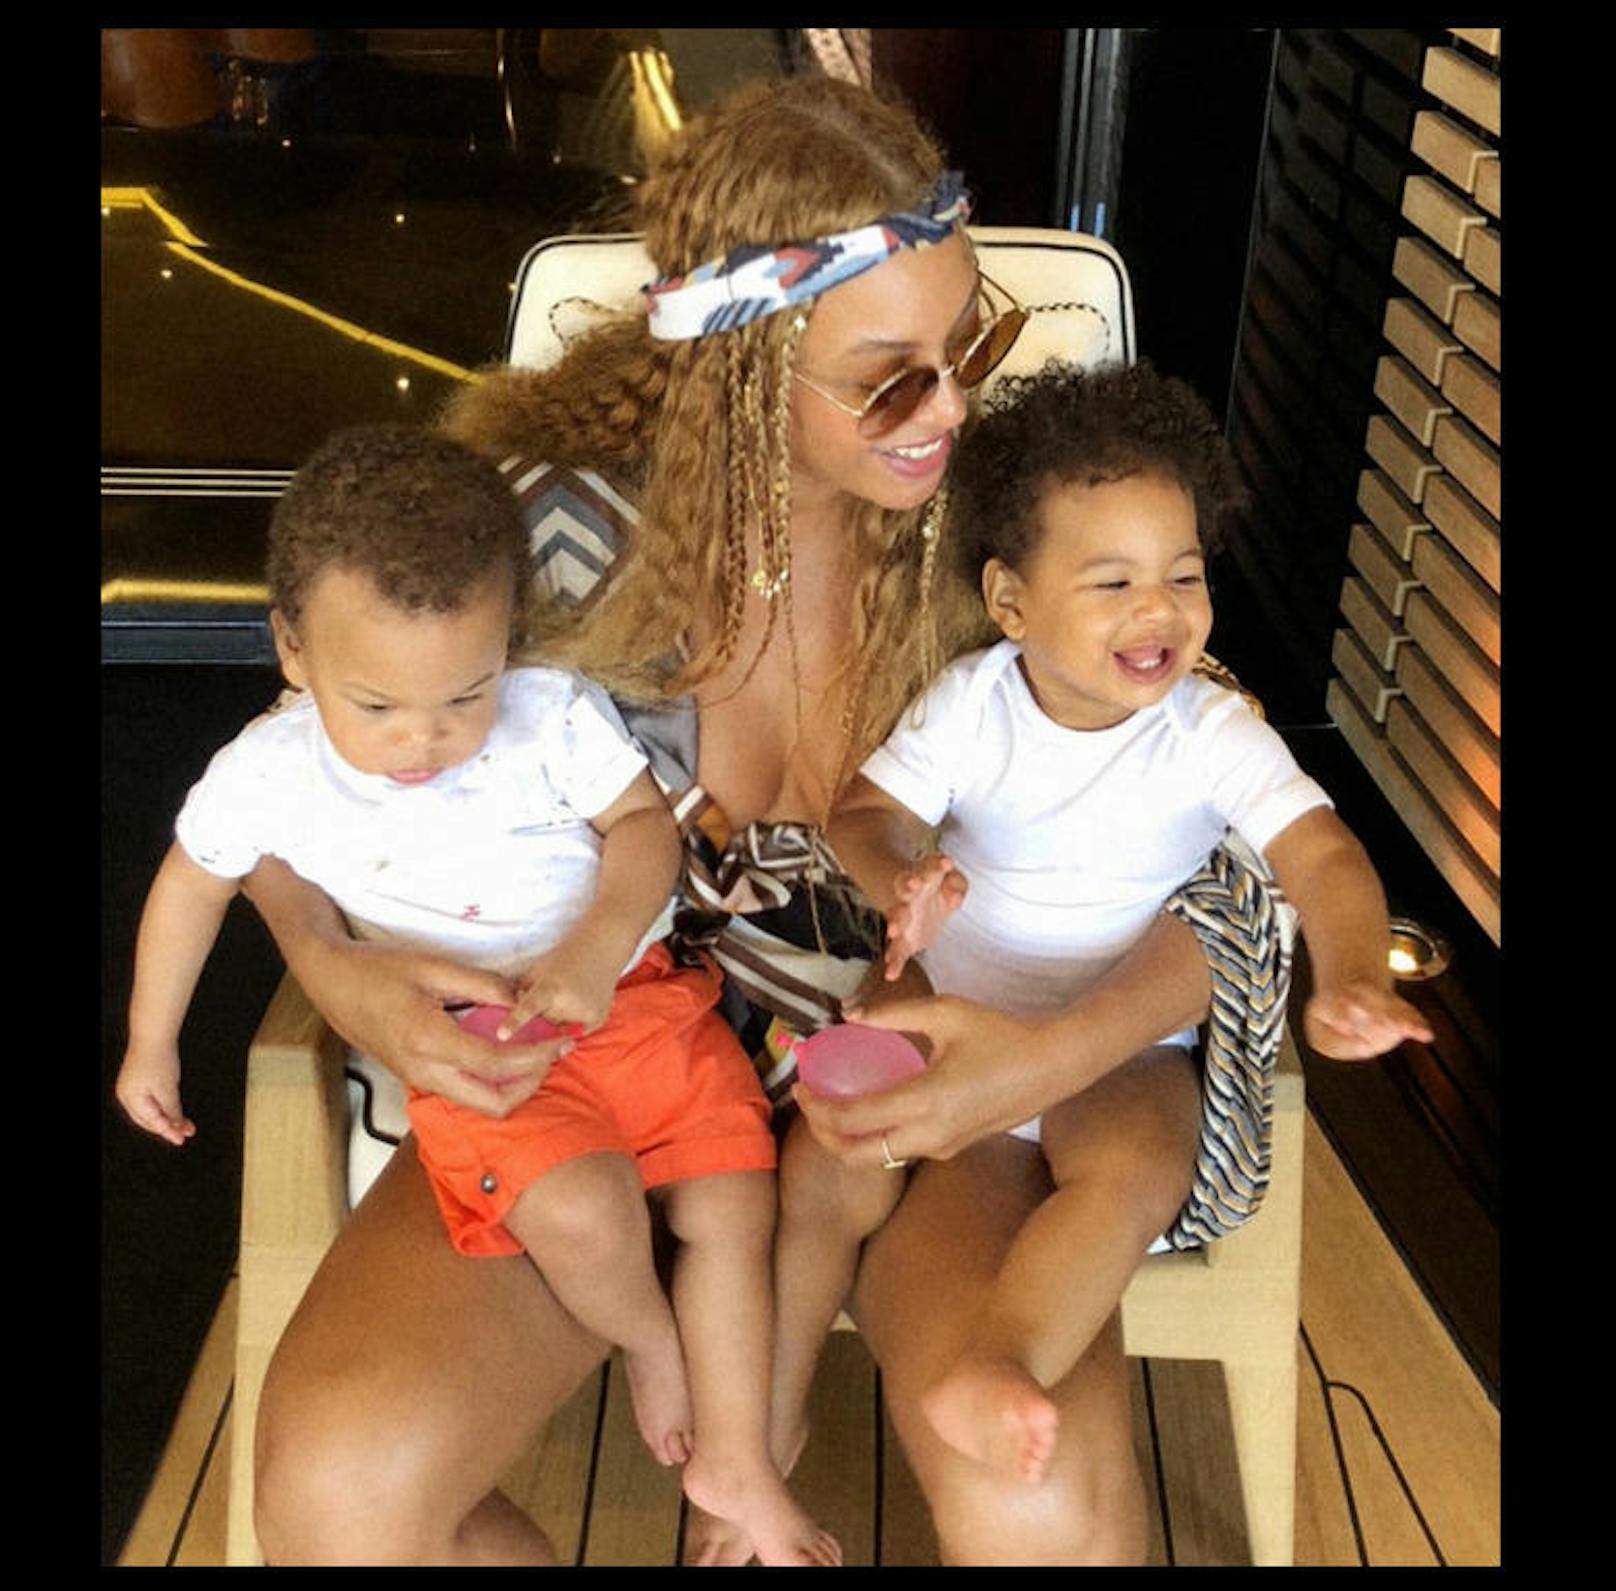 27.7.2018: Beyonce zeigt ihre Zwillinge Rumi und Sir (1 Jahr alt)
Fotocredit: beyonce.com